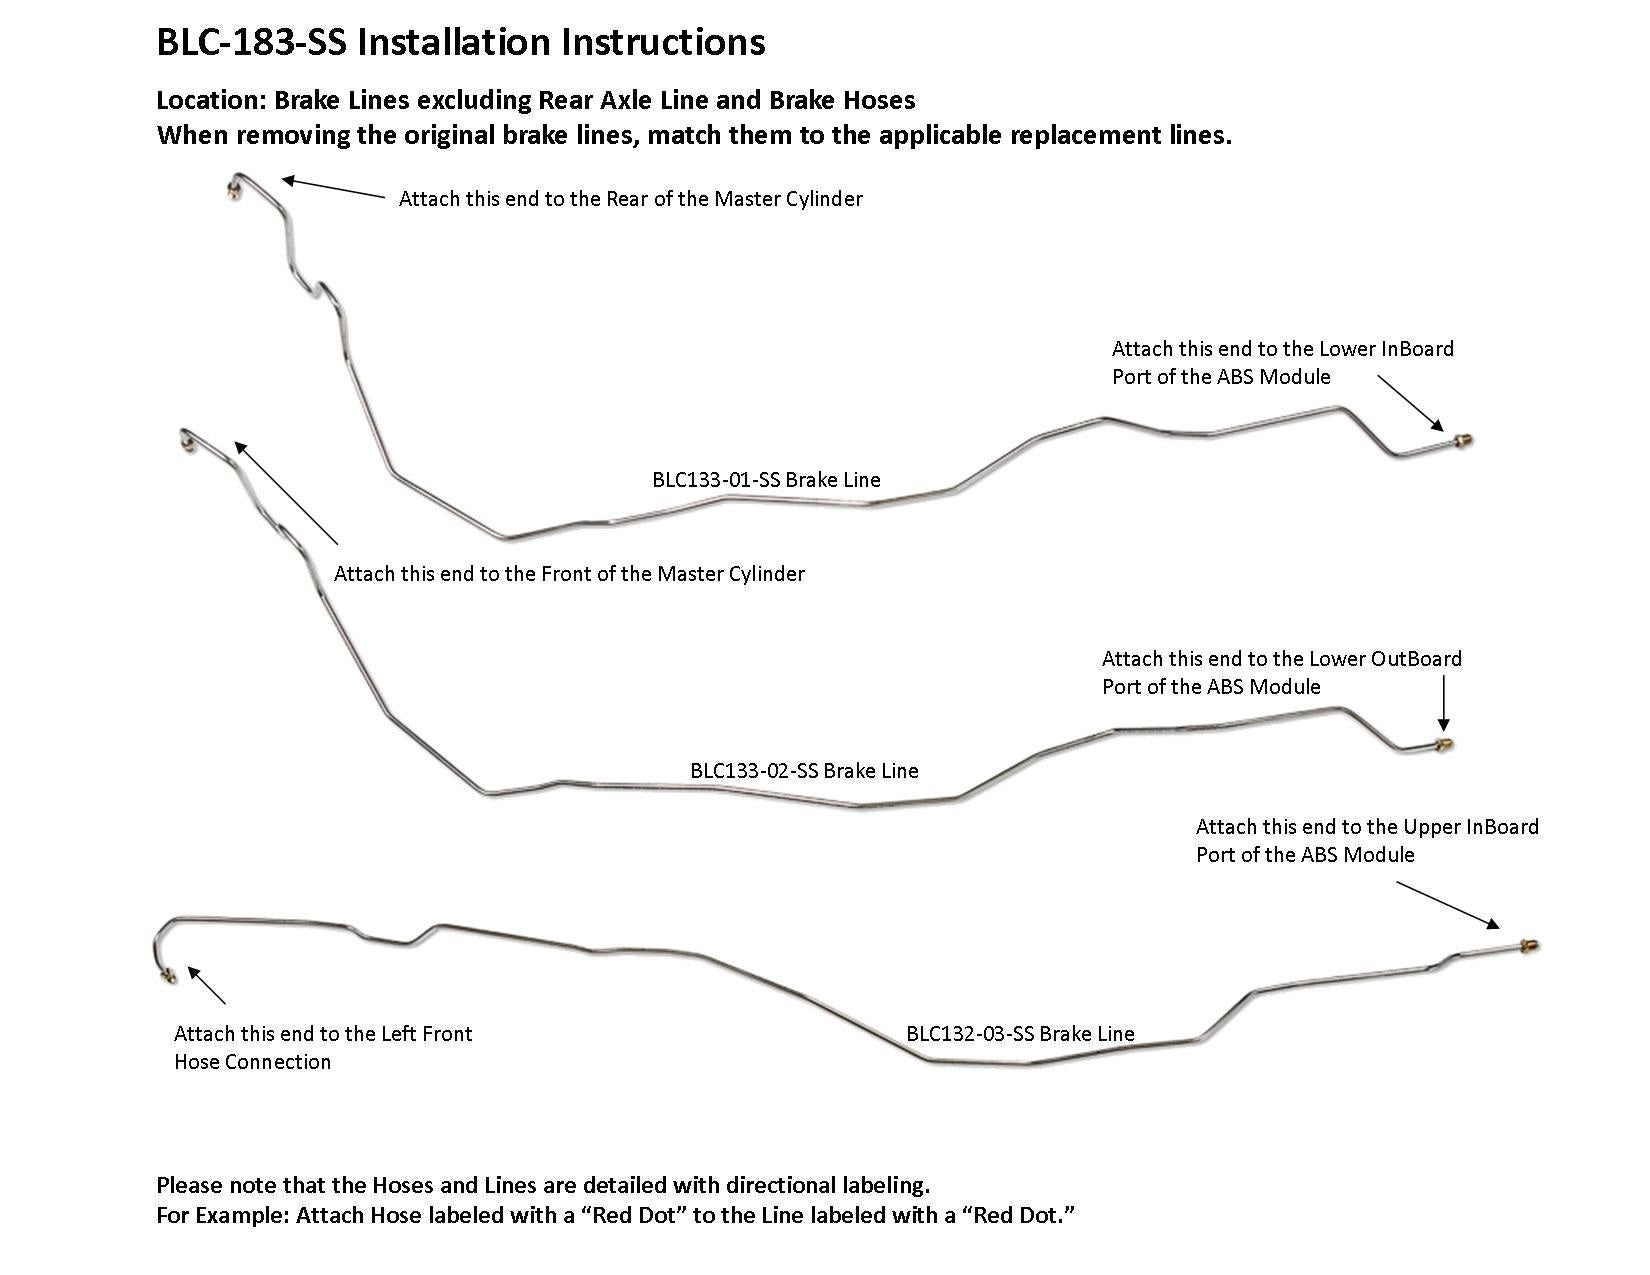 blc-183-ss-installation-instructions.jpg